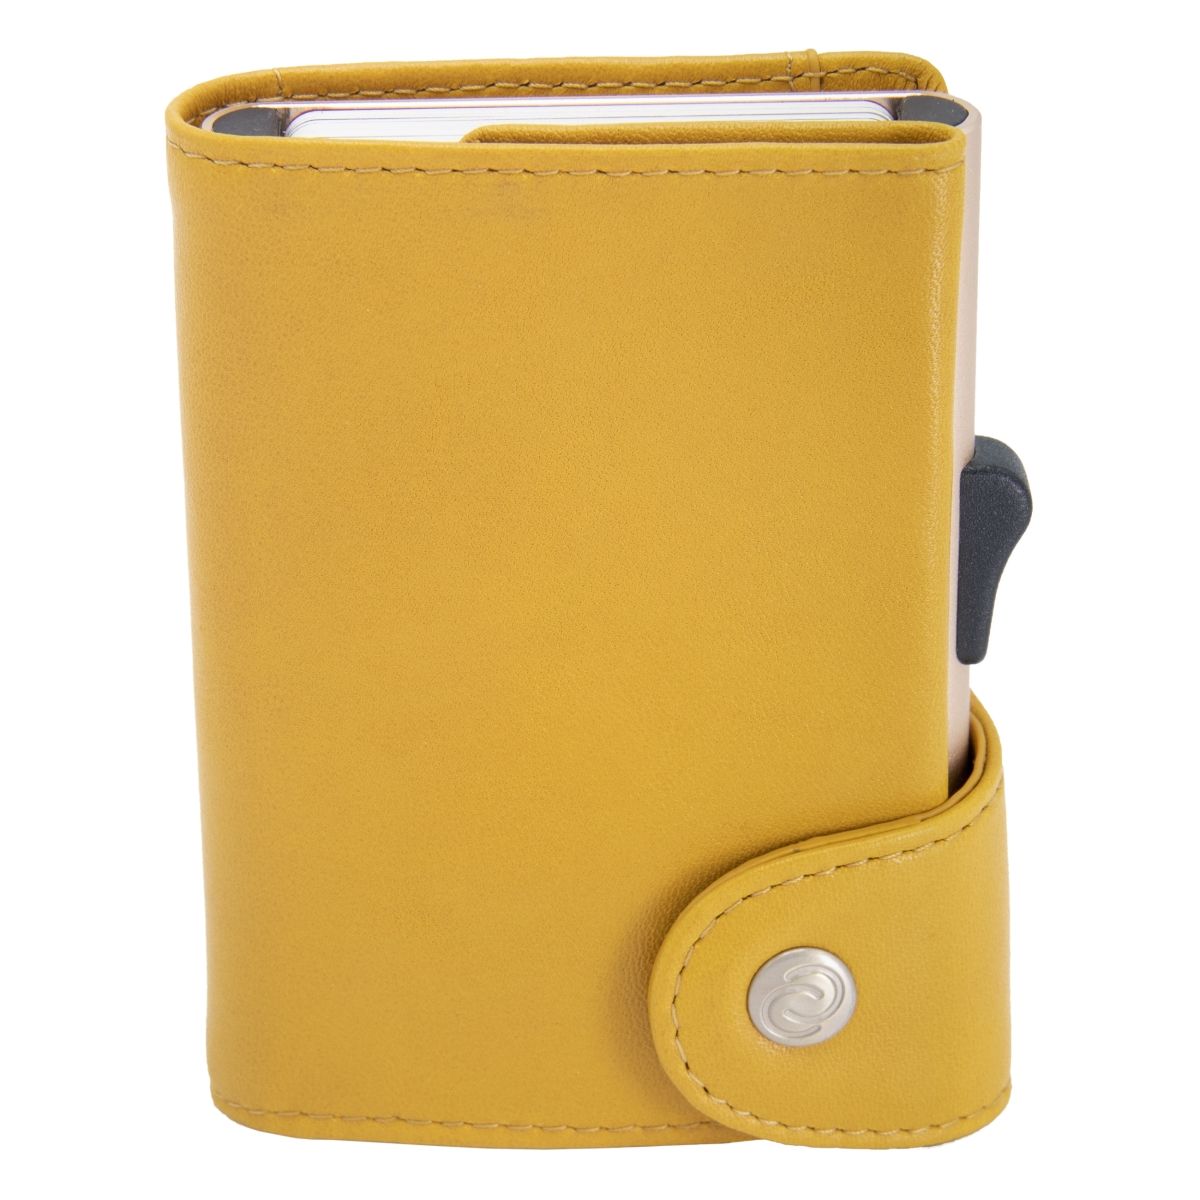 C-Secure ארנק אלומיניום XL בשילוב עור איטלקי - צהוב חרדל